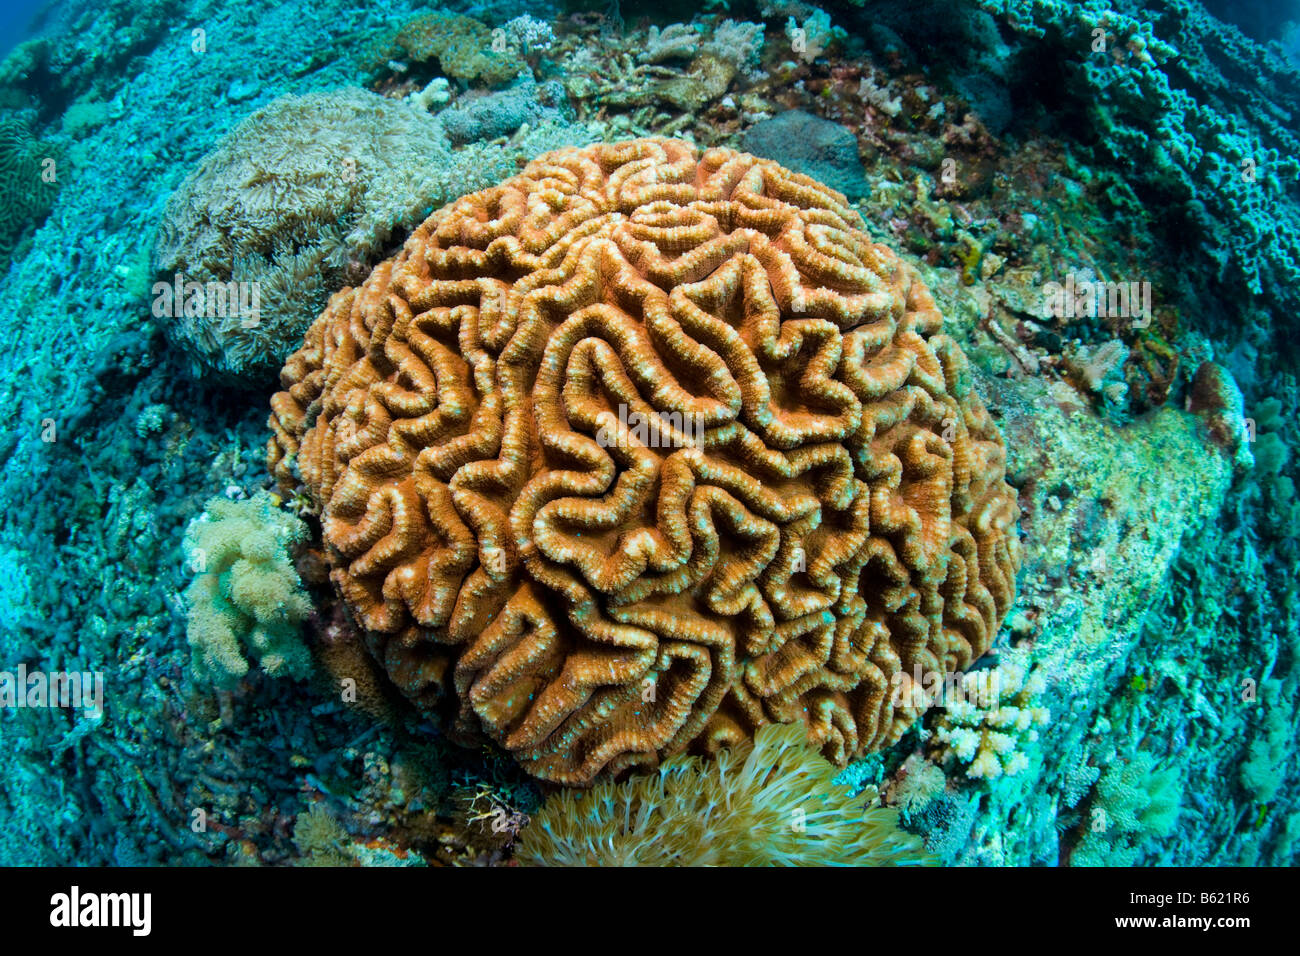 (Platygyra daedalea corail cerveau), Indonésie, Asie du sud-est Banque D'Images